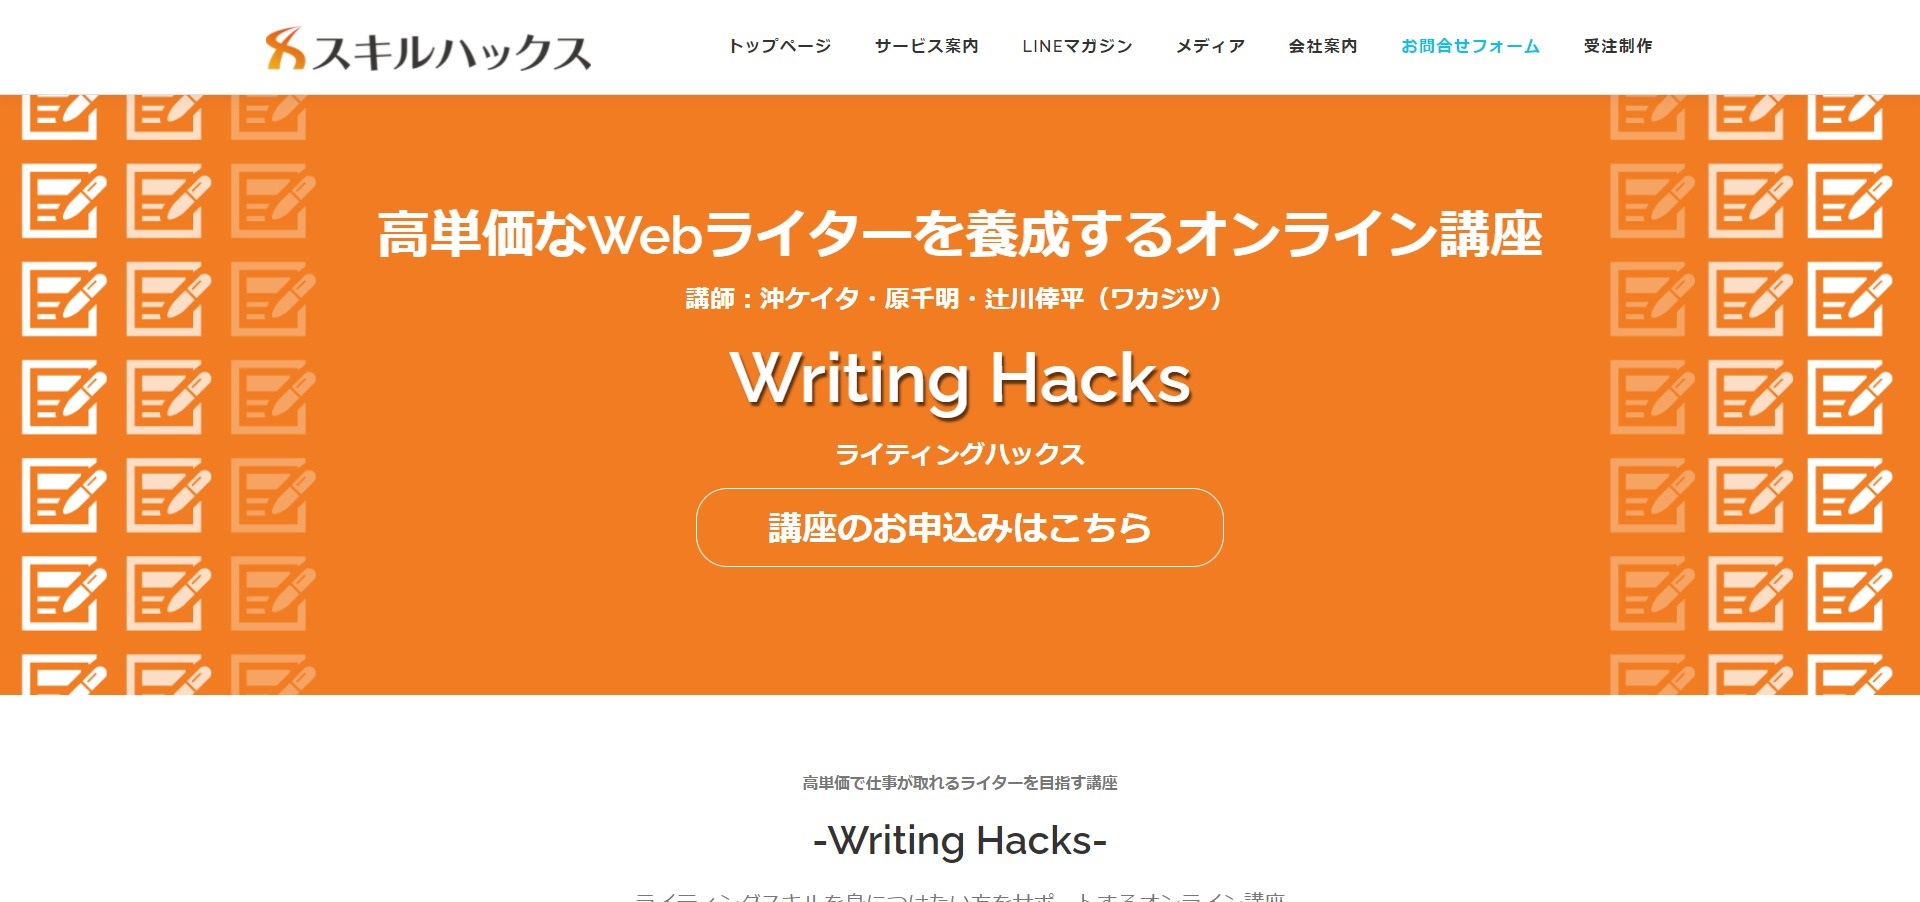 講座内容で選ぶなら「Wrirting Hacks」